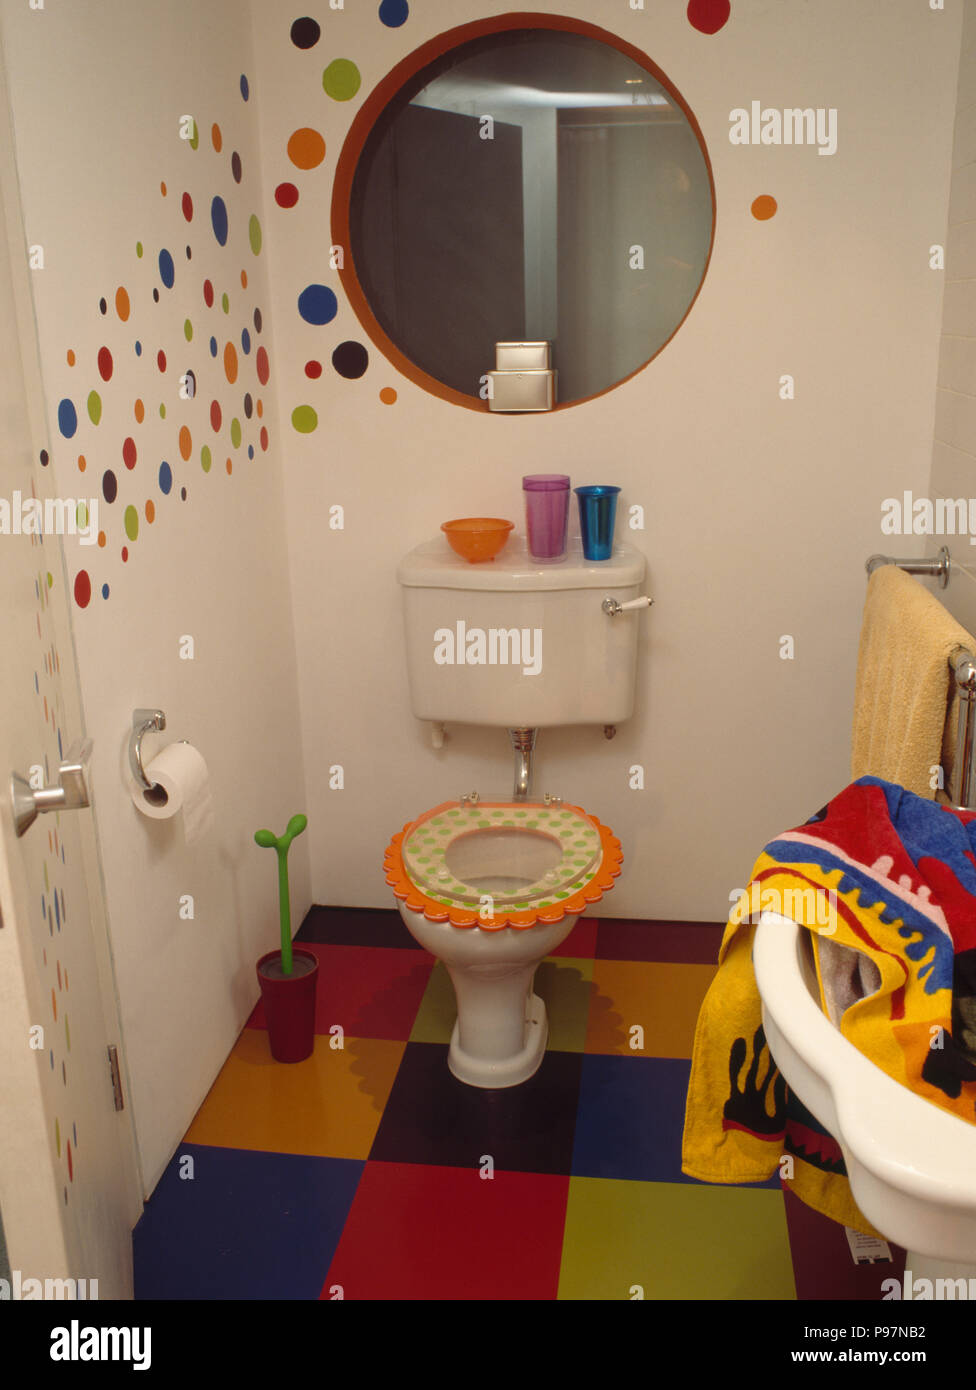 Espejo circular encima de wc con asiento de novedad en un cuarto de baño  moderno con suelos de mosaico multicolor y manchas pintados en la pared  Fotografía de stock - Alamy